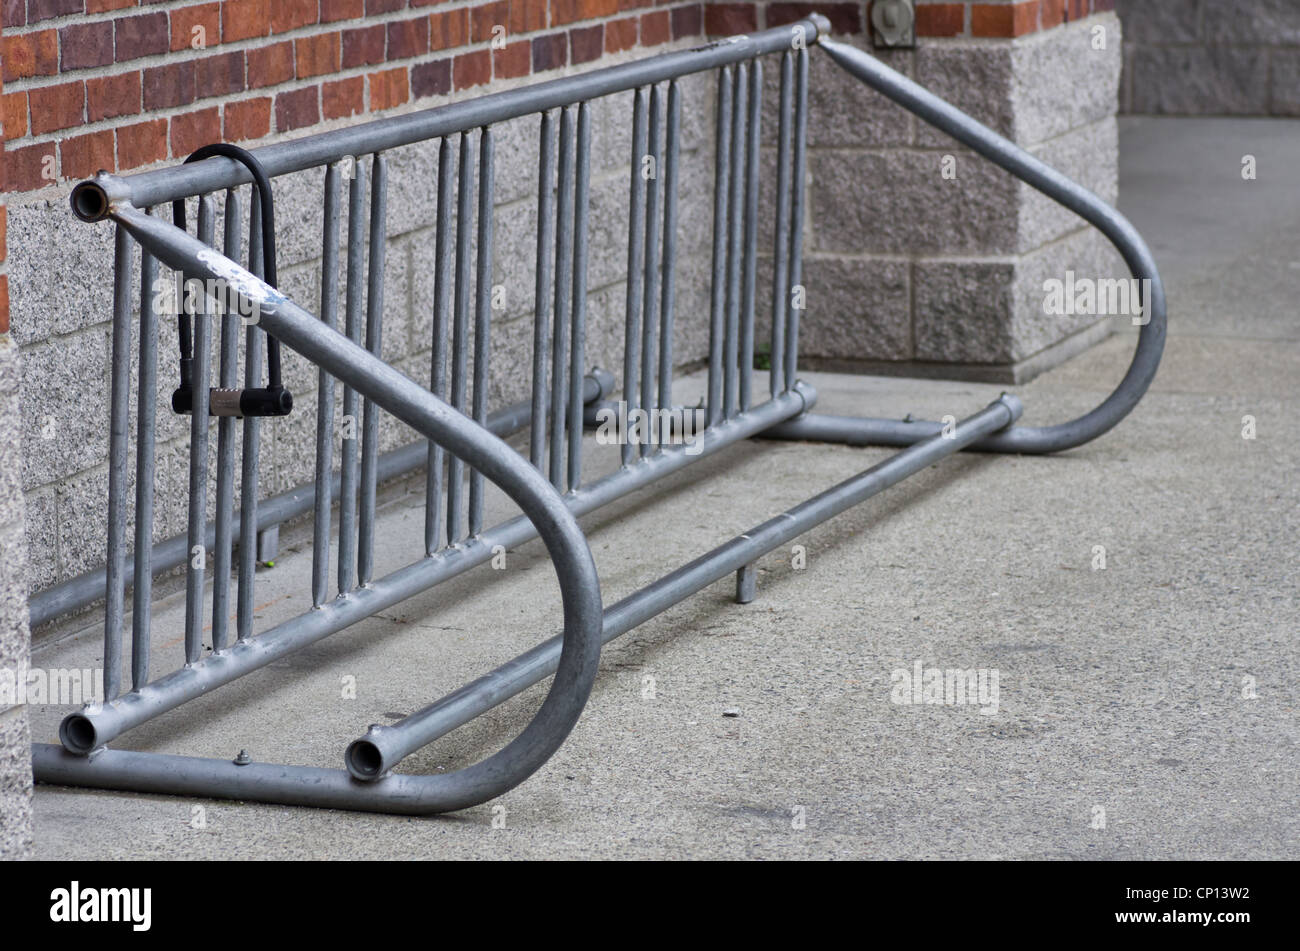 Un support à bicyclettes abandonnées avec cadenas de vélo Banque D'Images